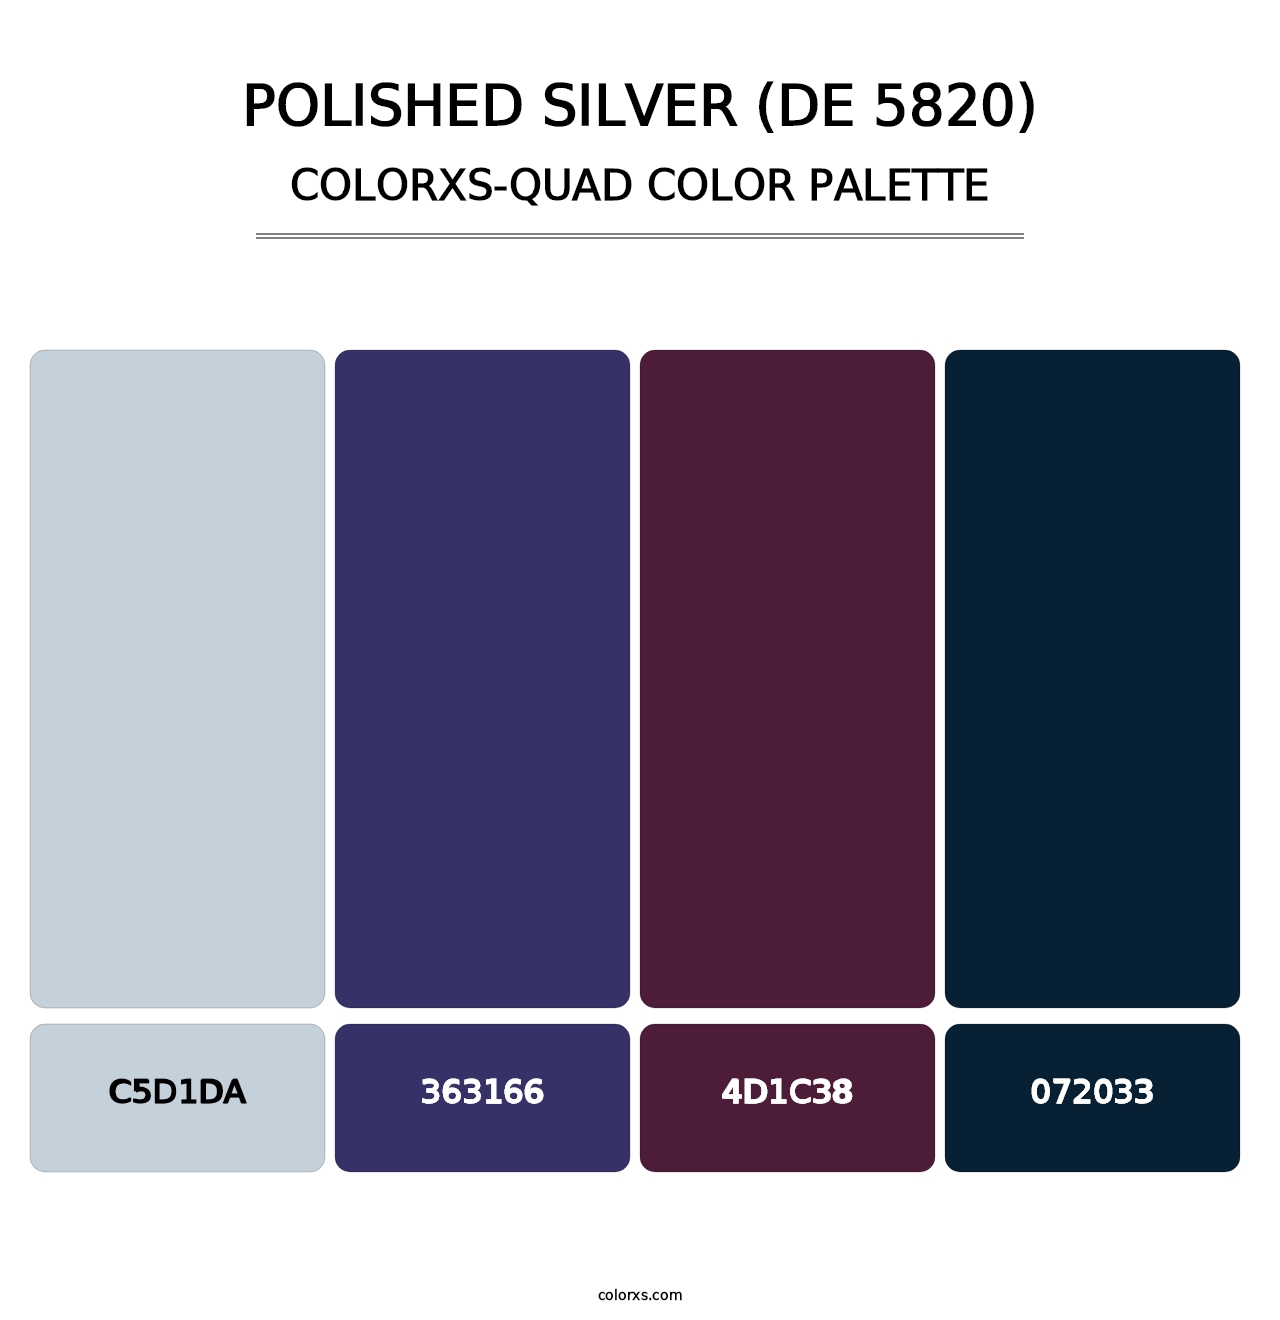 Polished Silver (DE 5820) - Colorxs Quad Palette